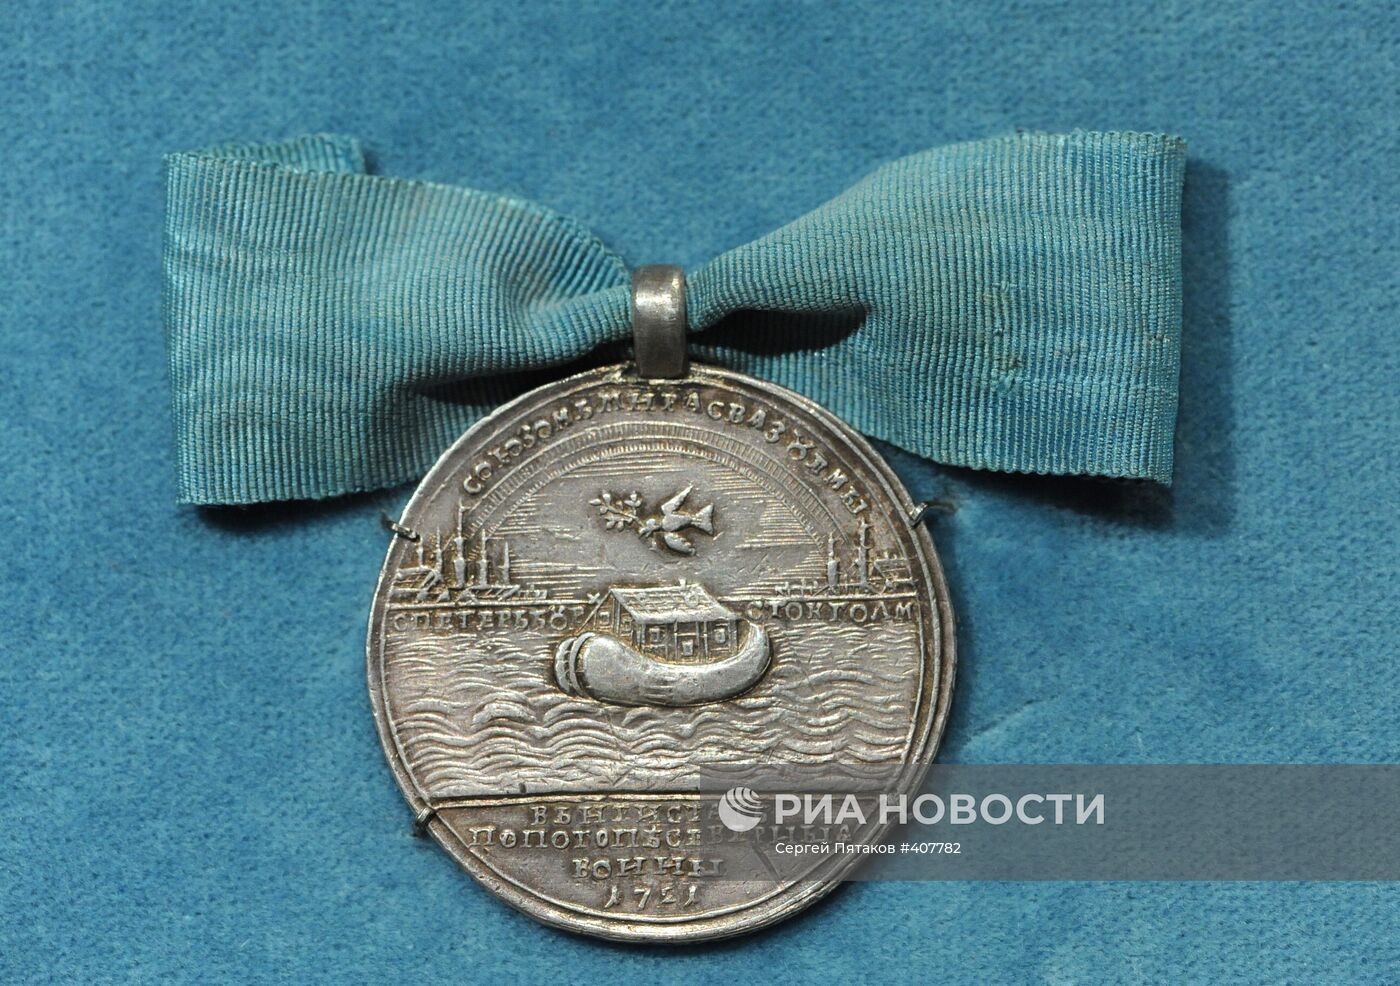 Выставка "Великие русские победы в медали и гравюре"